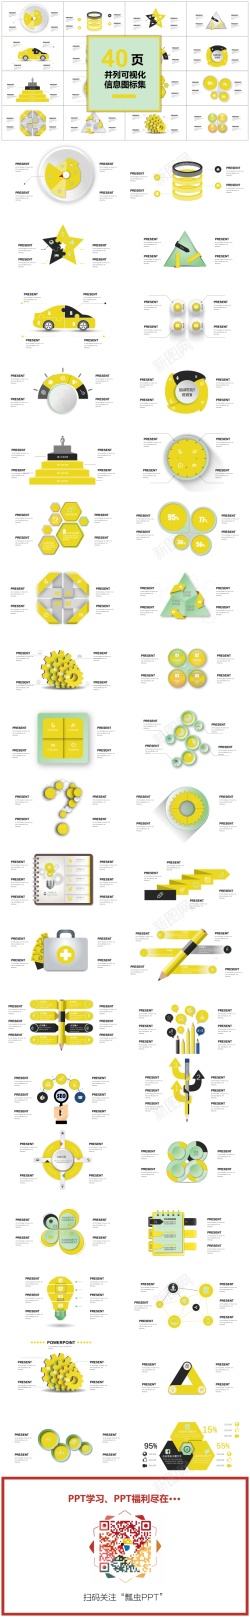 黄色花纹00140页黄色并列可视化图表集PPT模板